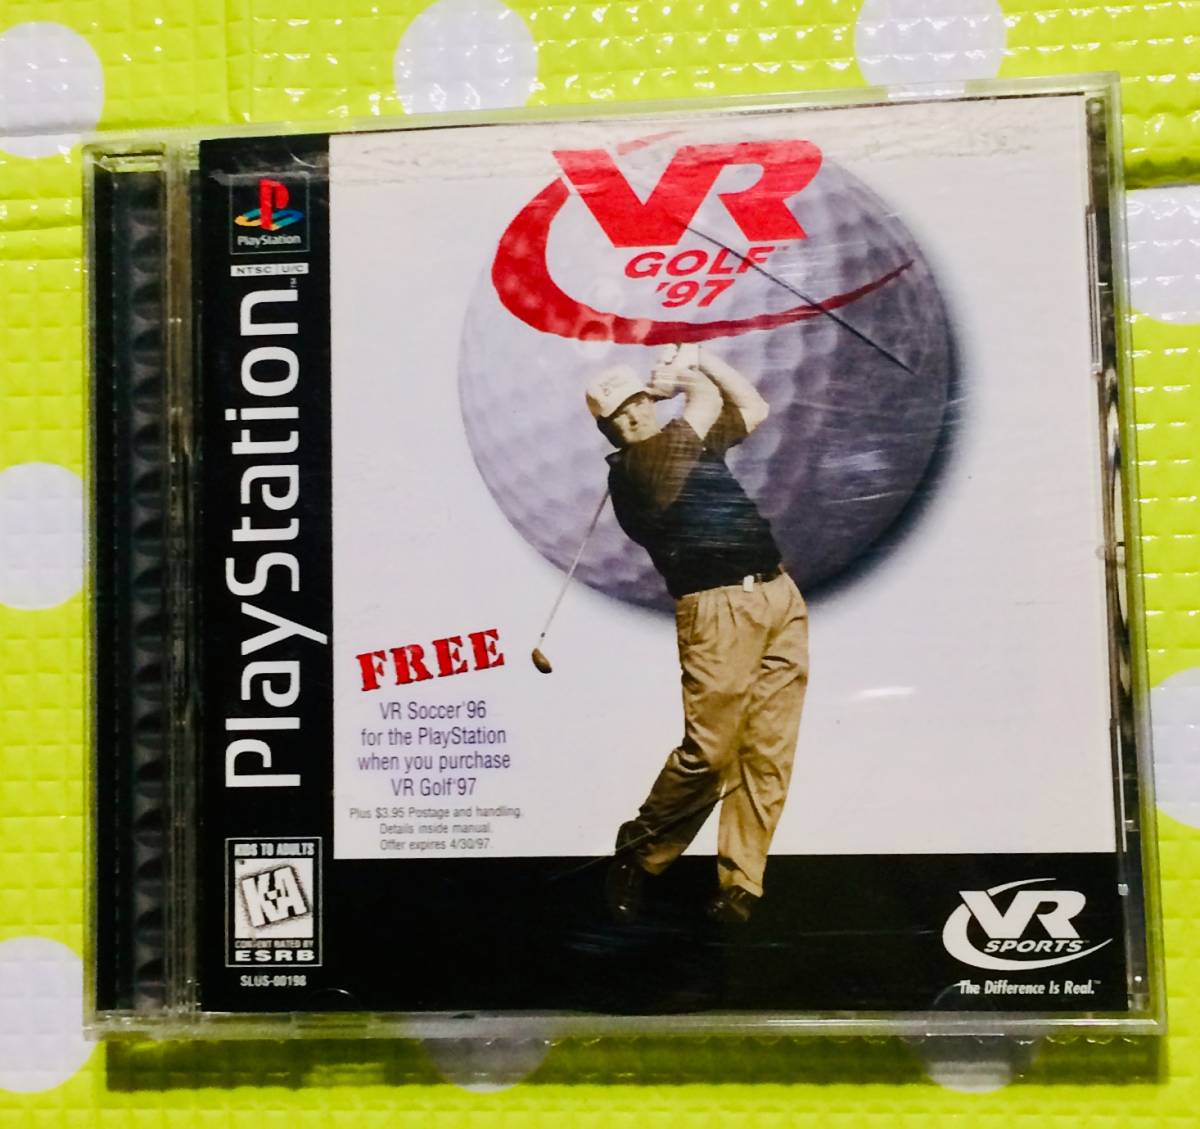 즉결「 동고환영」PSVR Golf 97 골프 플레이스테이션◎CD×DVD 다수 출품중♪6067 :: - 비드바이코리아 - 해외 전문  경매대행 선두주자 - BIDBUY